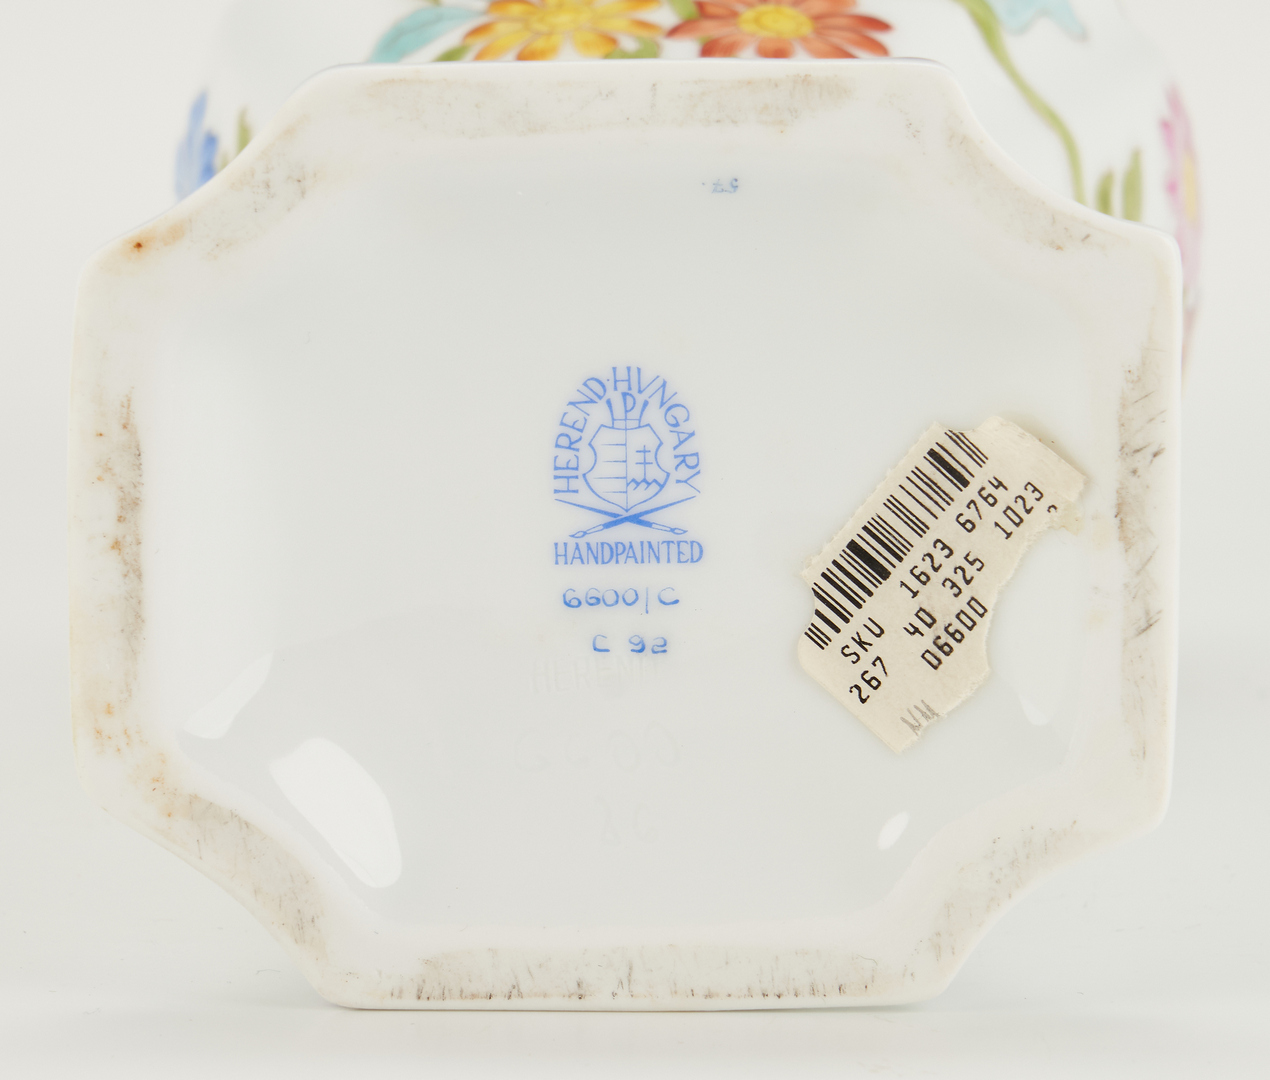 Lot 316: Pair Herend Porcelain Urns, Rabbit Finials